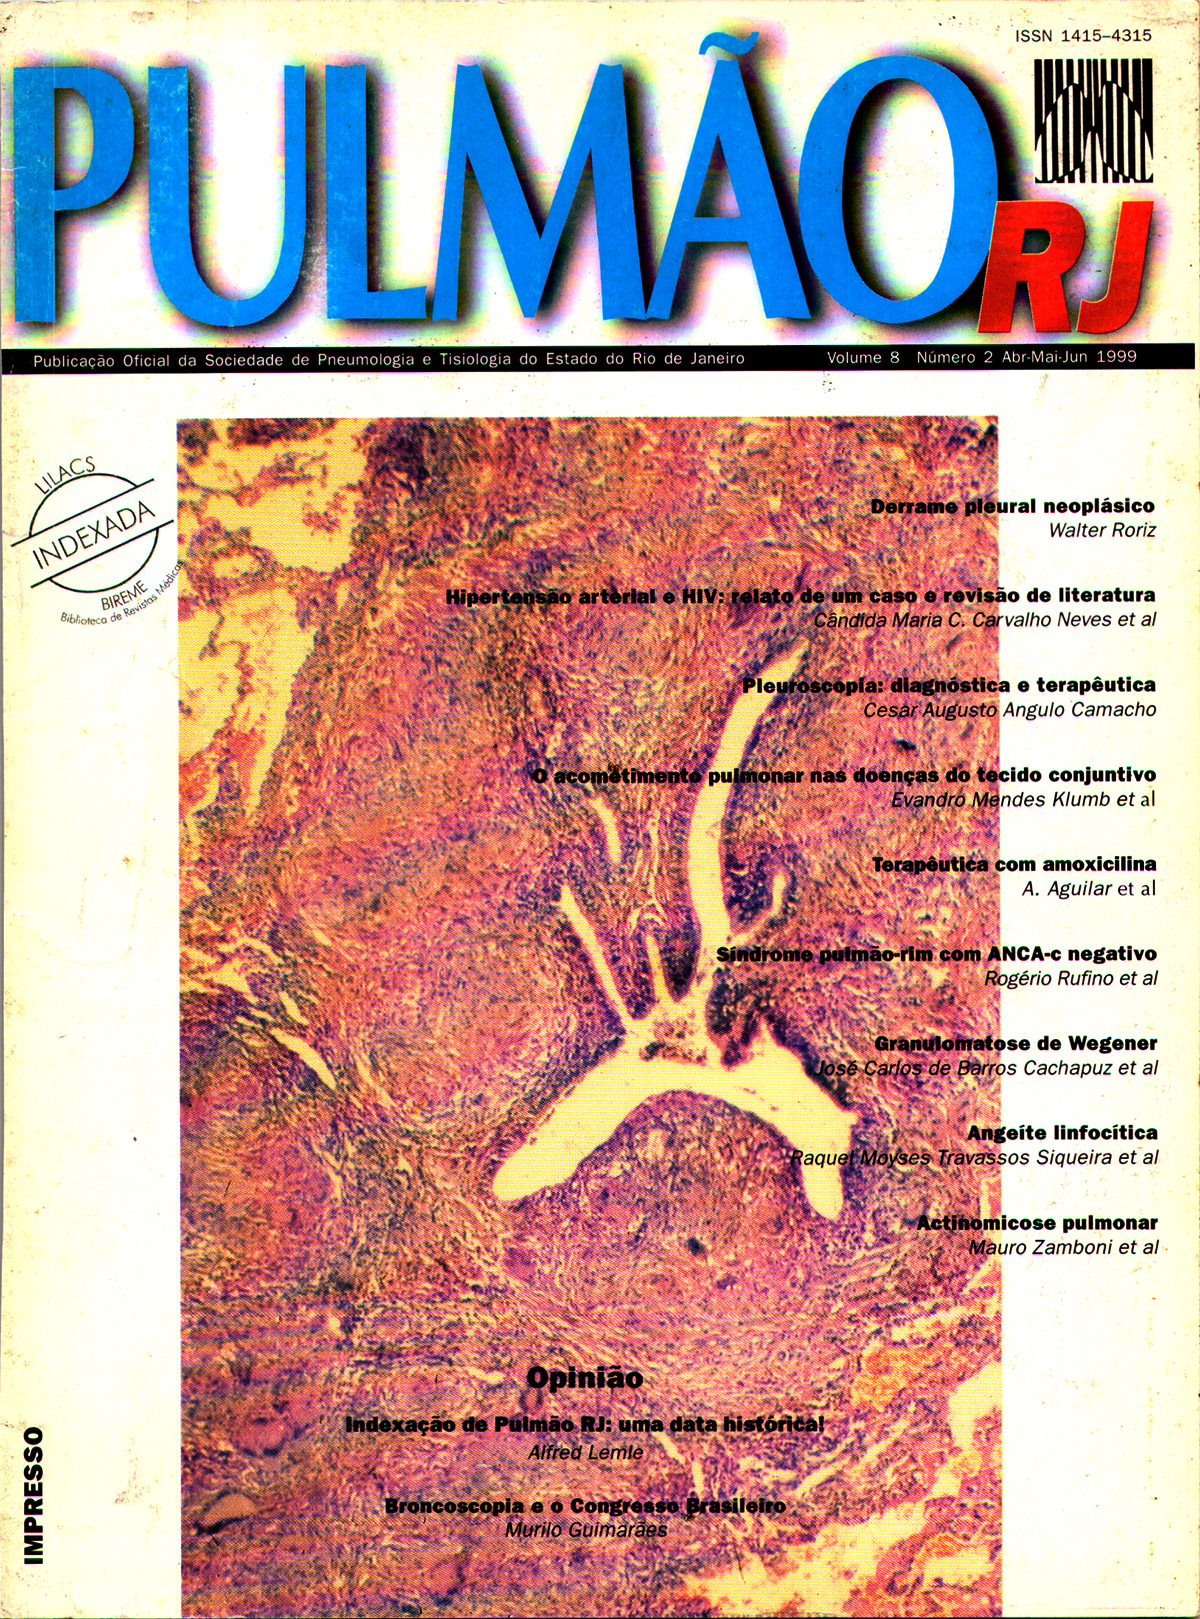 Revista Pulmão RJ 1999 - Número 1